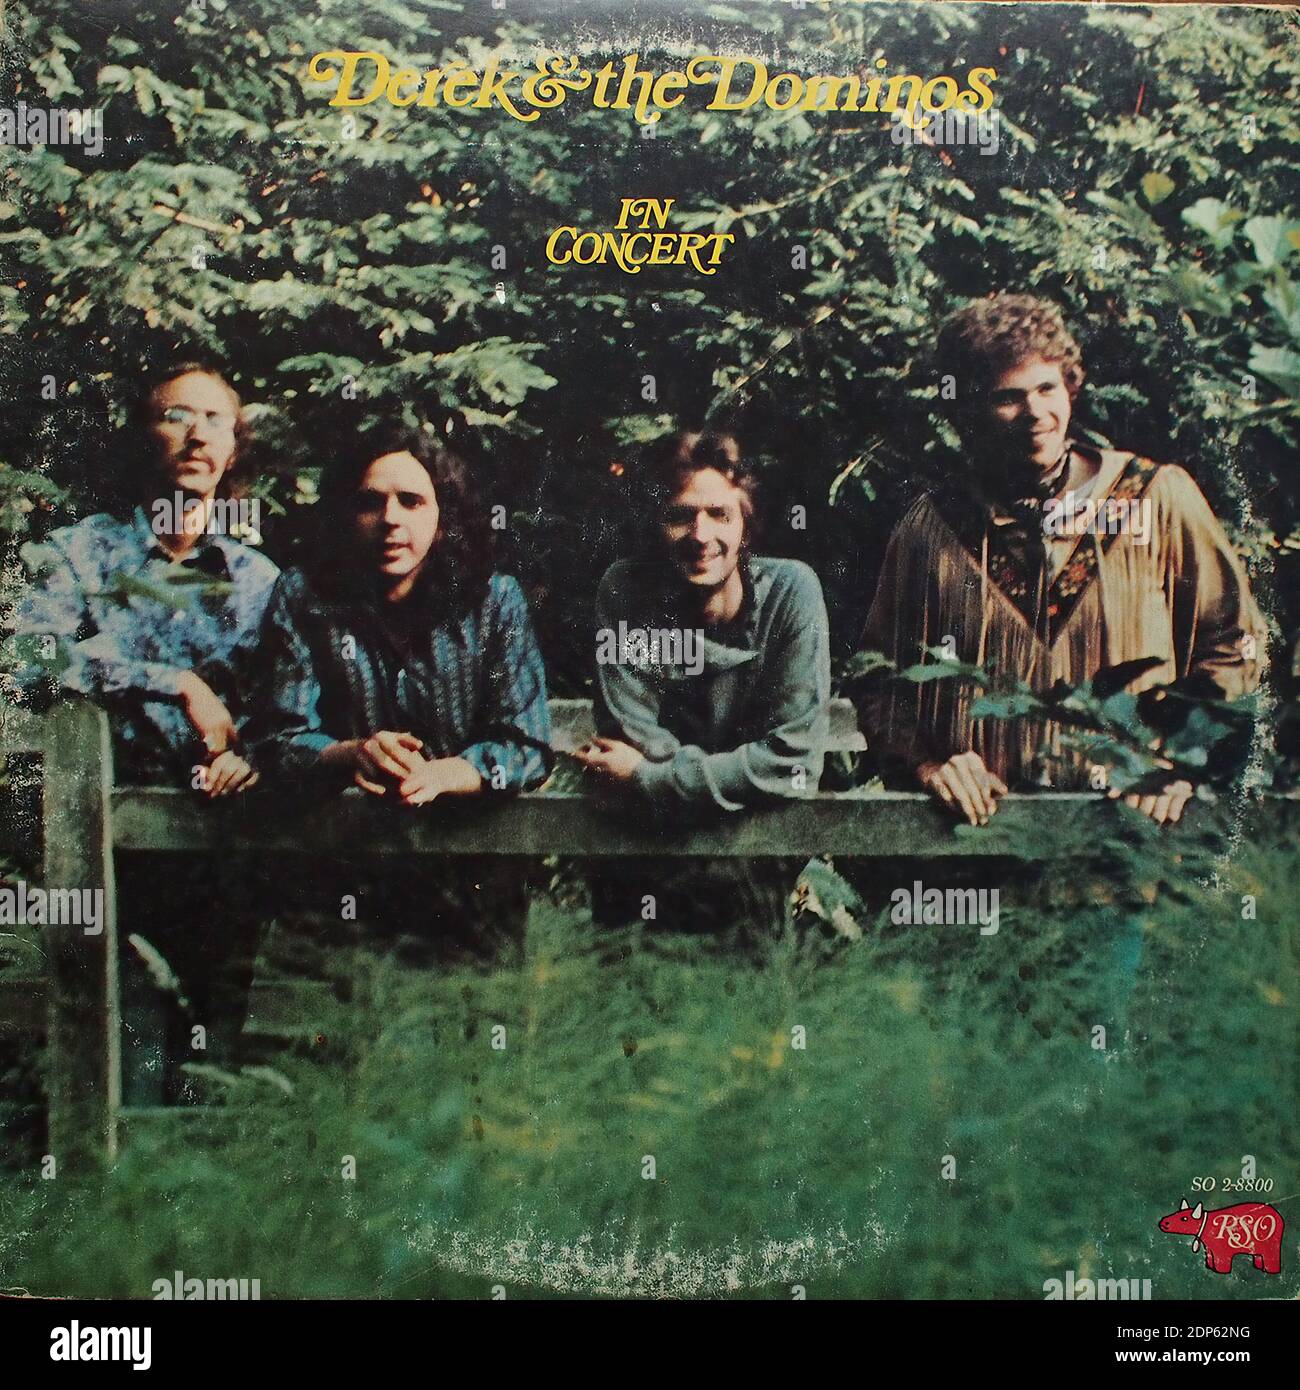 Derek & The Dominos - in concerto al Fillmore East (Eric Clapton, Bobby Whitlock, Jim Gordon, Carl Radle), Atlantic RSO SO 2-8800, 1973 - copertina di album in vinile d'epoca Foto Stock